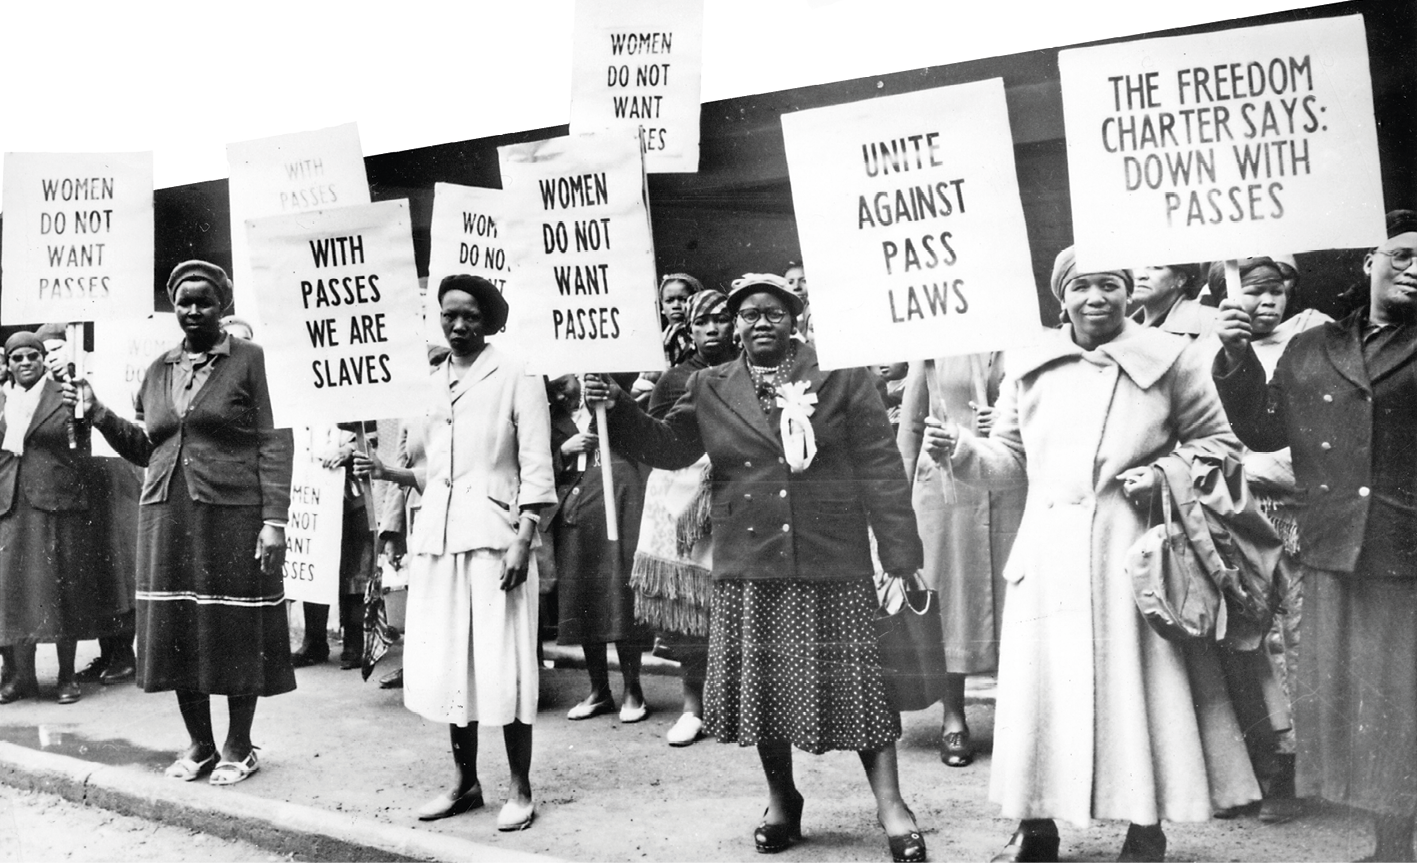 Fotografia em preto e branco. No primeiro plano, mulheres negras em um protesto. Carregam diversos cartazes com dizeres e palavras de ordem.